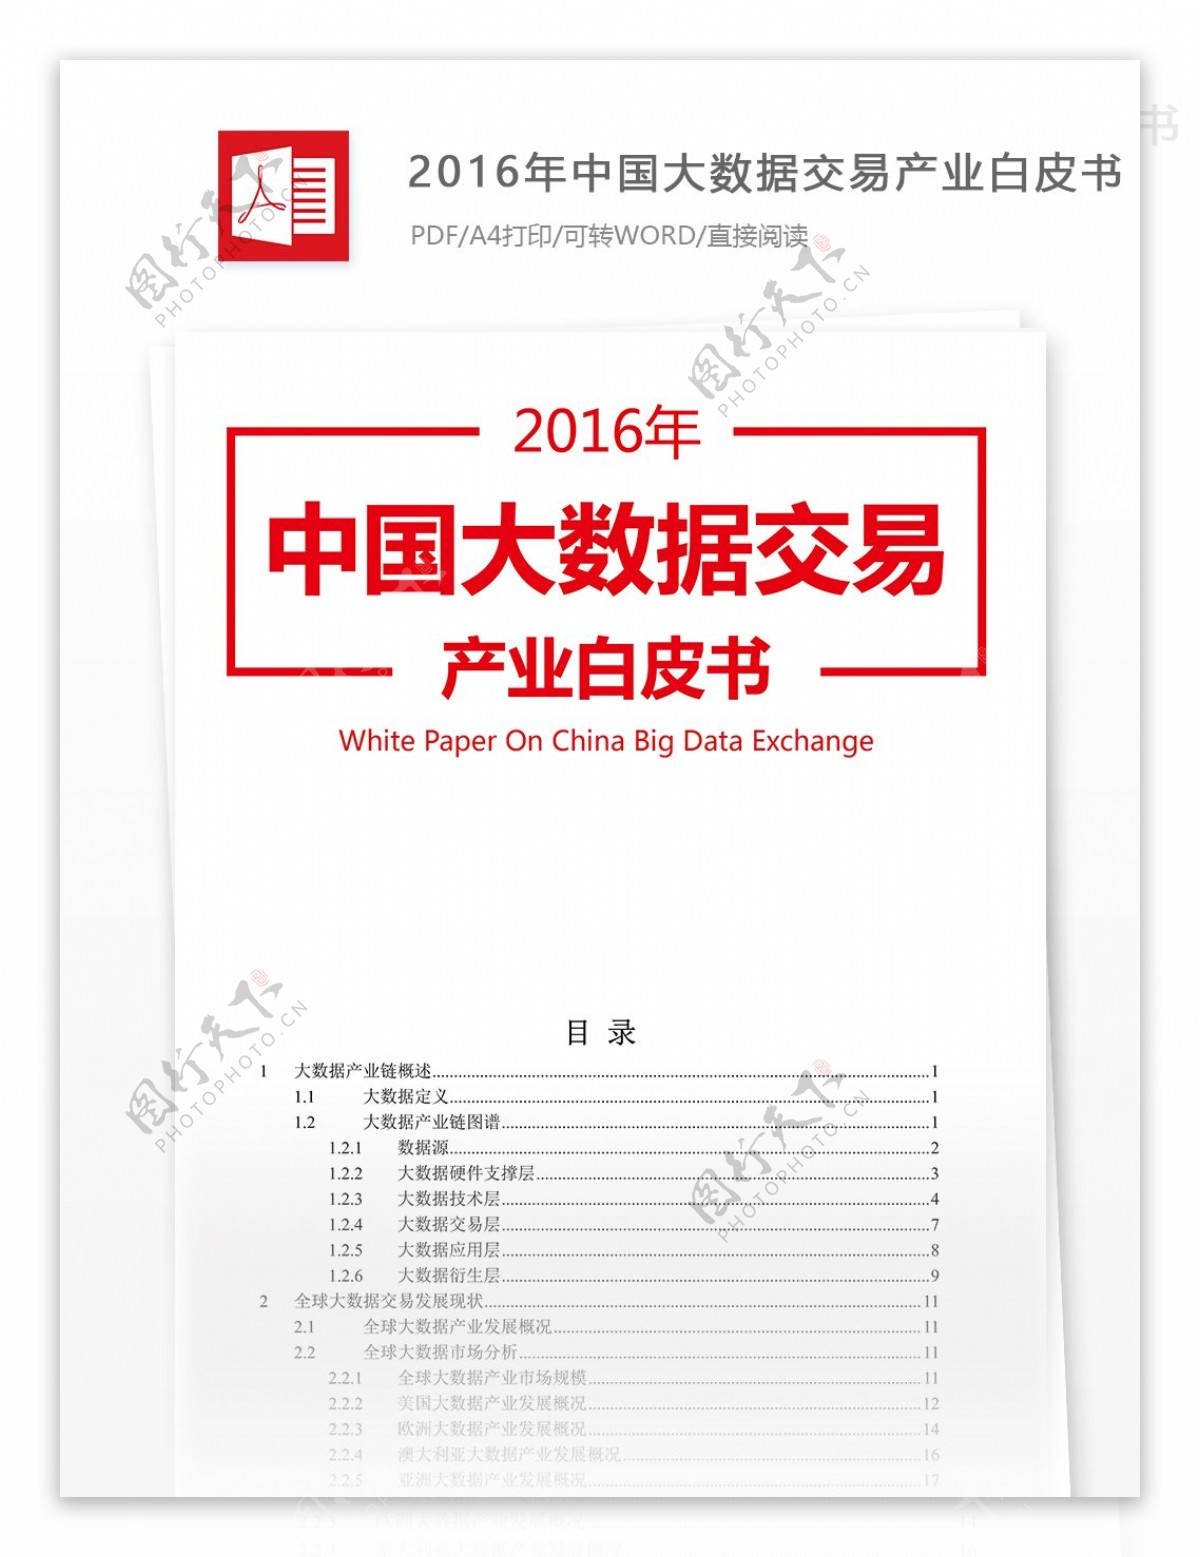 2016年中国大数据交易产业市场分析报告